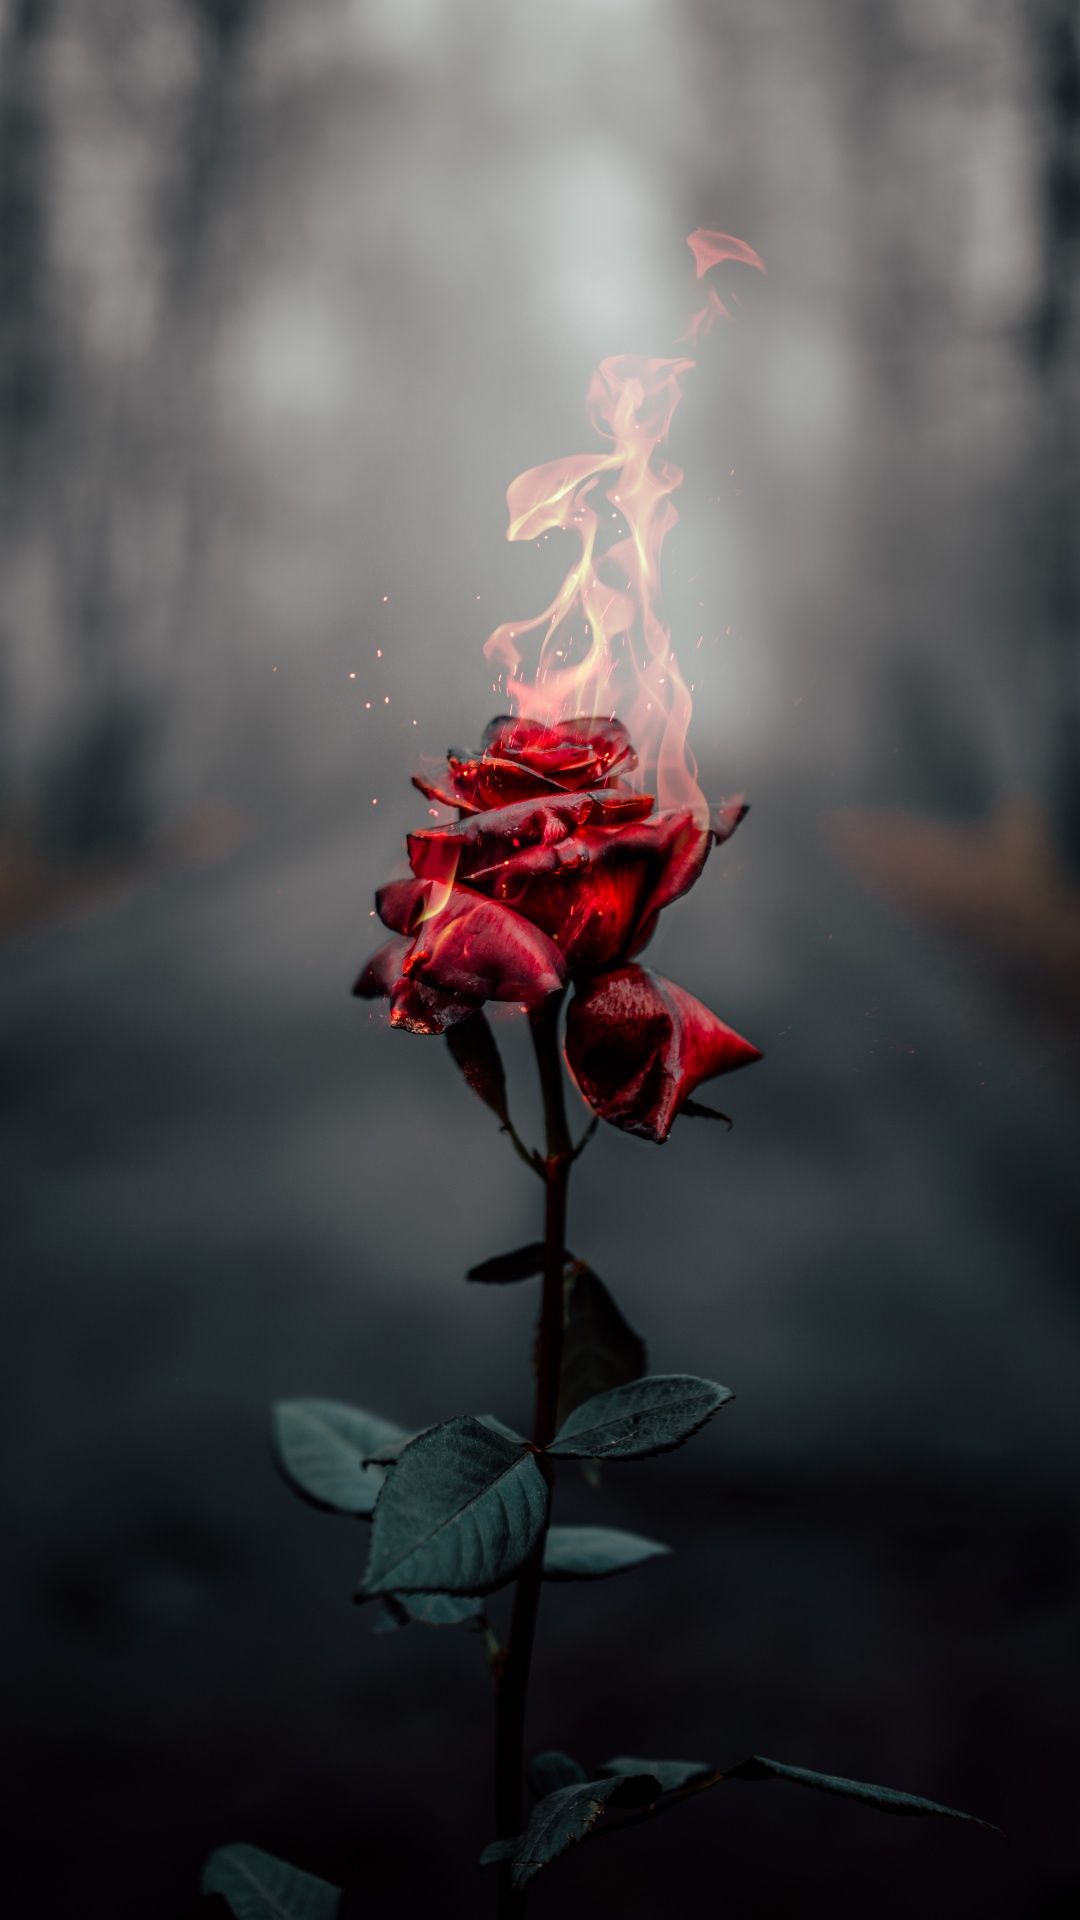  Rosen Hintergrundbild 1080x1920. Rose flower Wallpaper 4K, Fire, Burning, Dark, Aesthetic